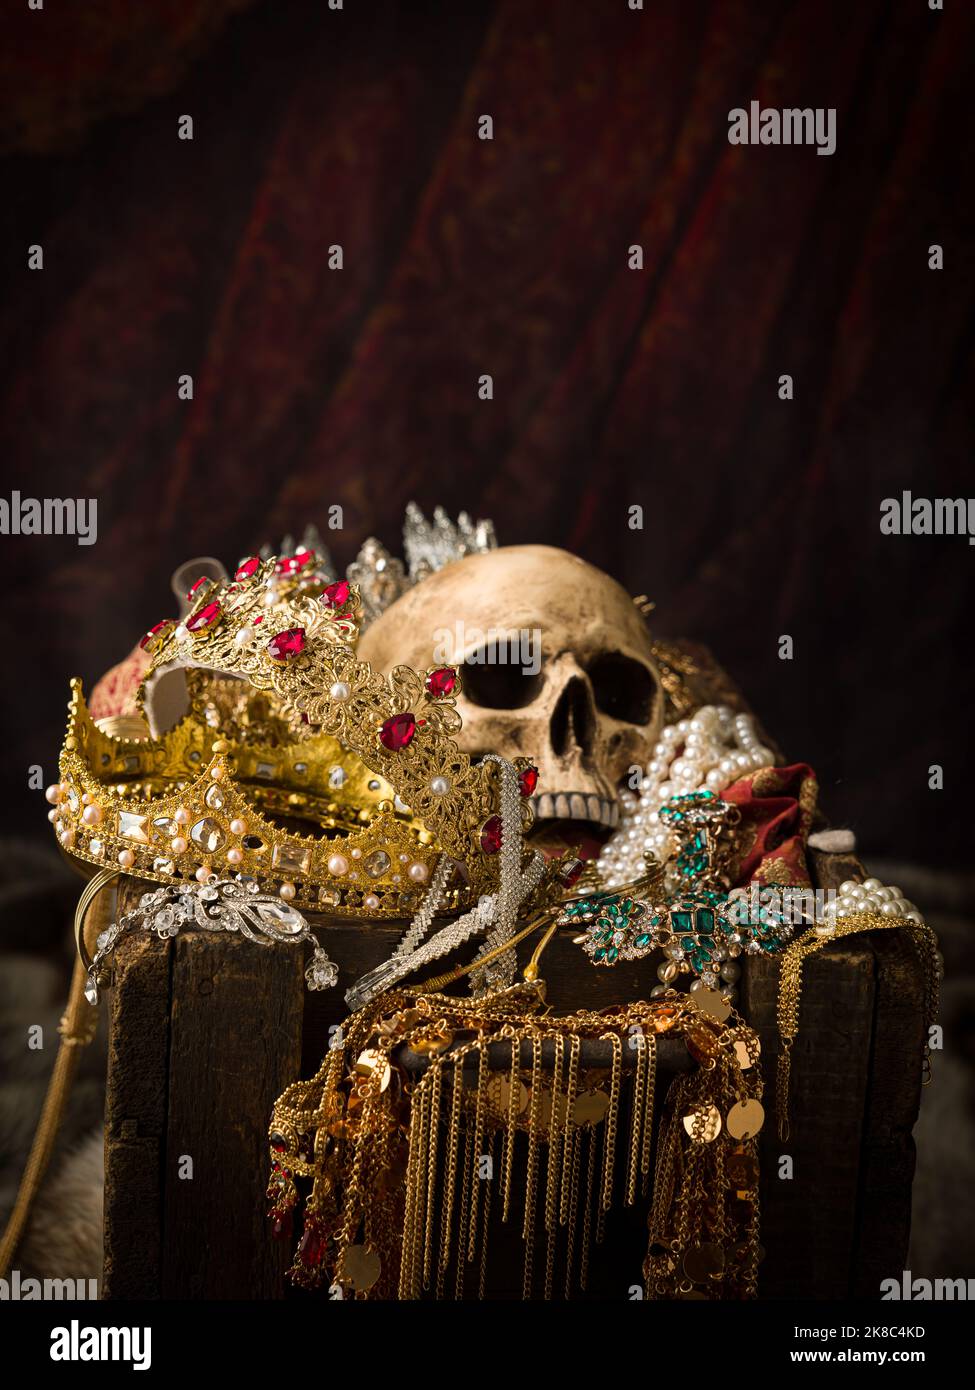 Imagen romántica de un cofre del tesoro lleno de joyas, joyas preciosas y coronas de oro del rey Foto de stock